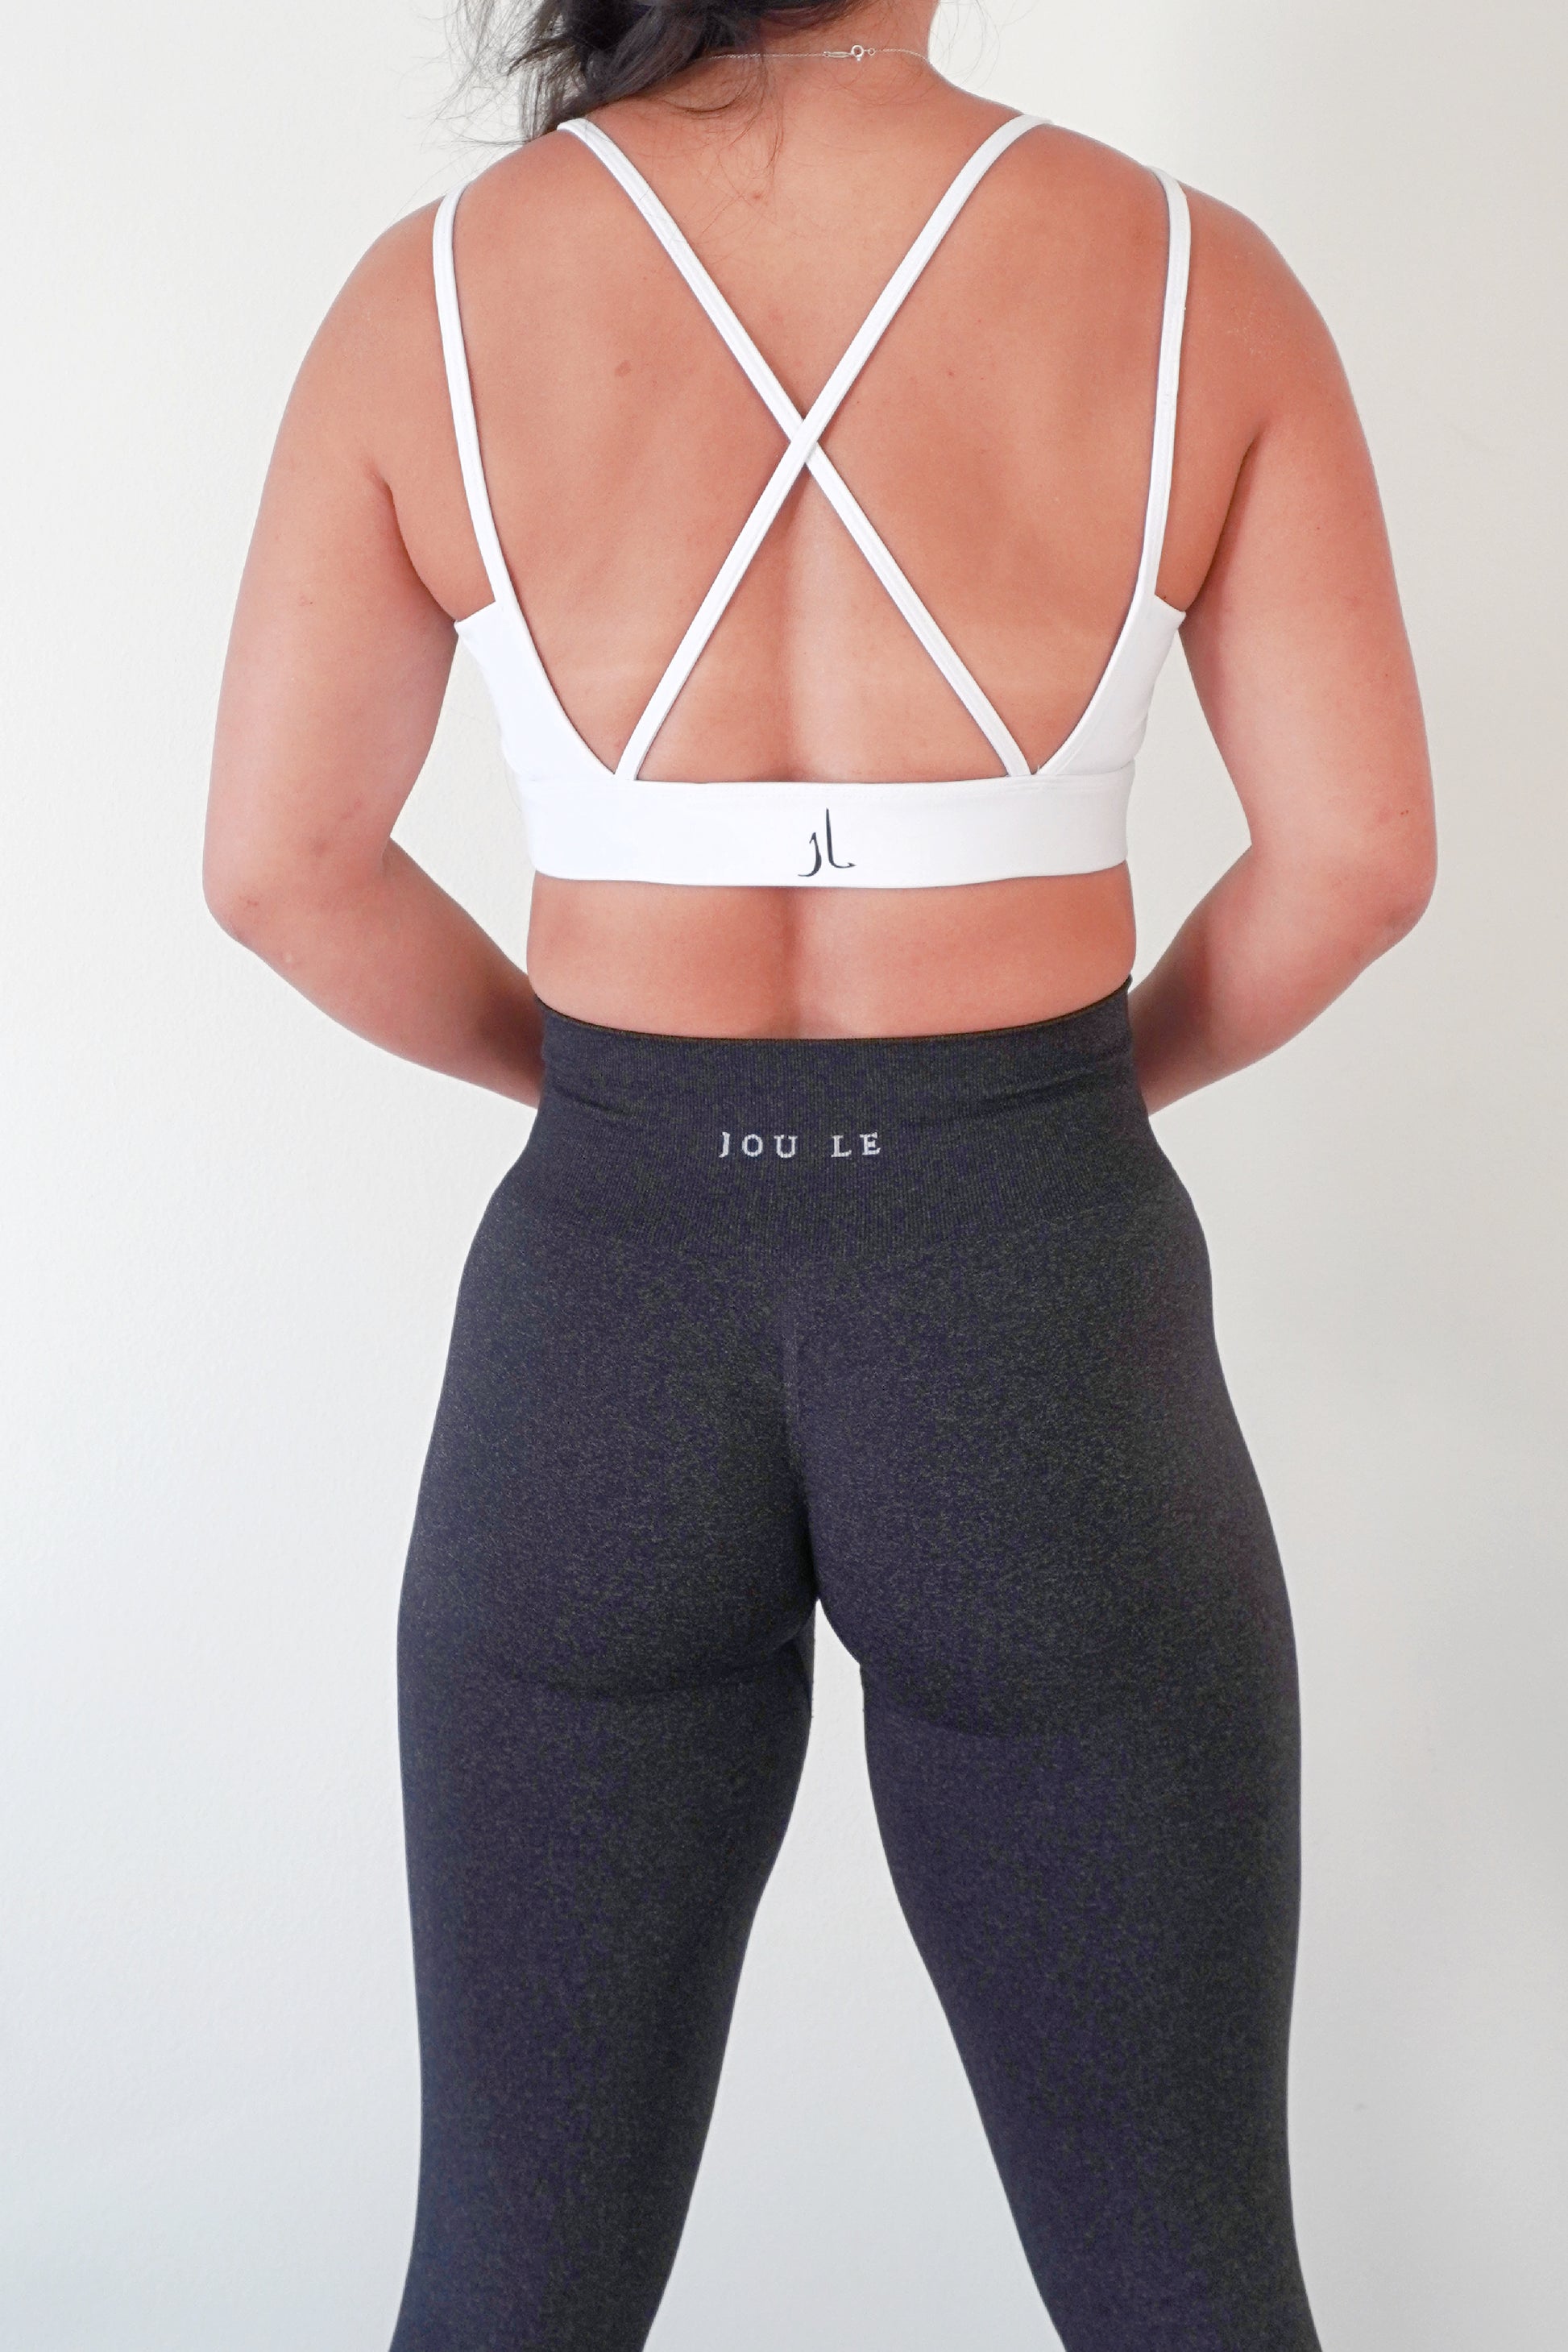 Super stretch soft yoga pants - Linked Moda